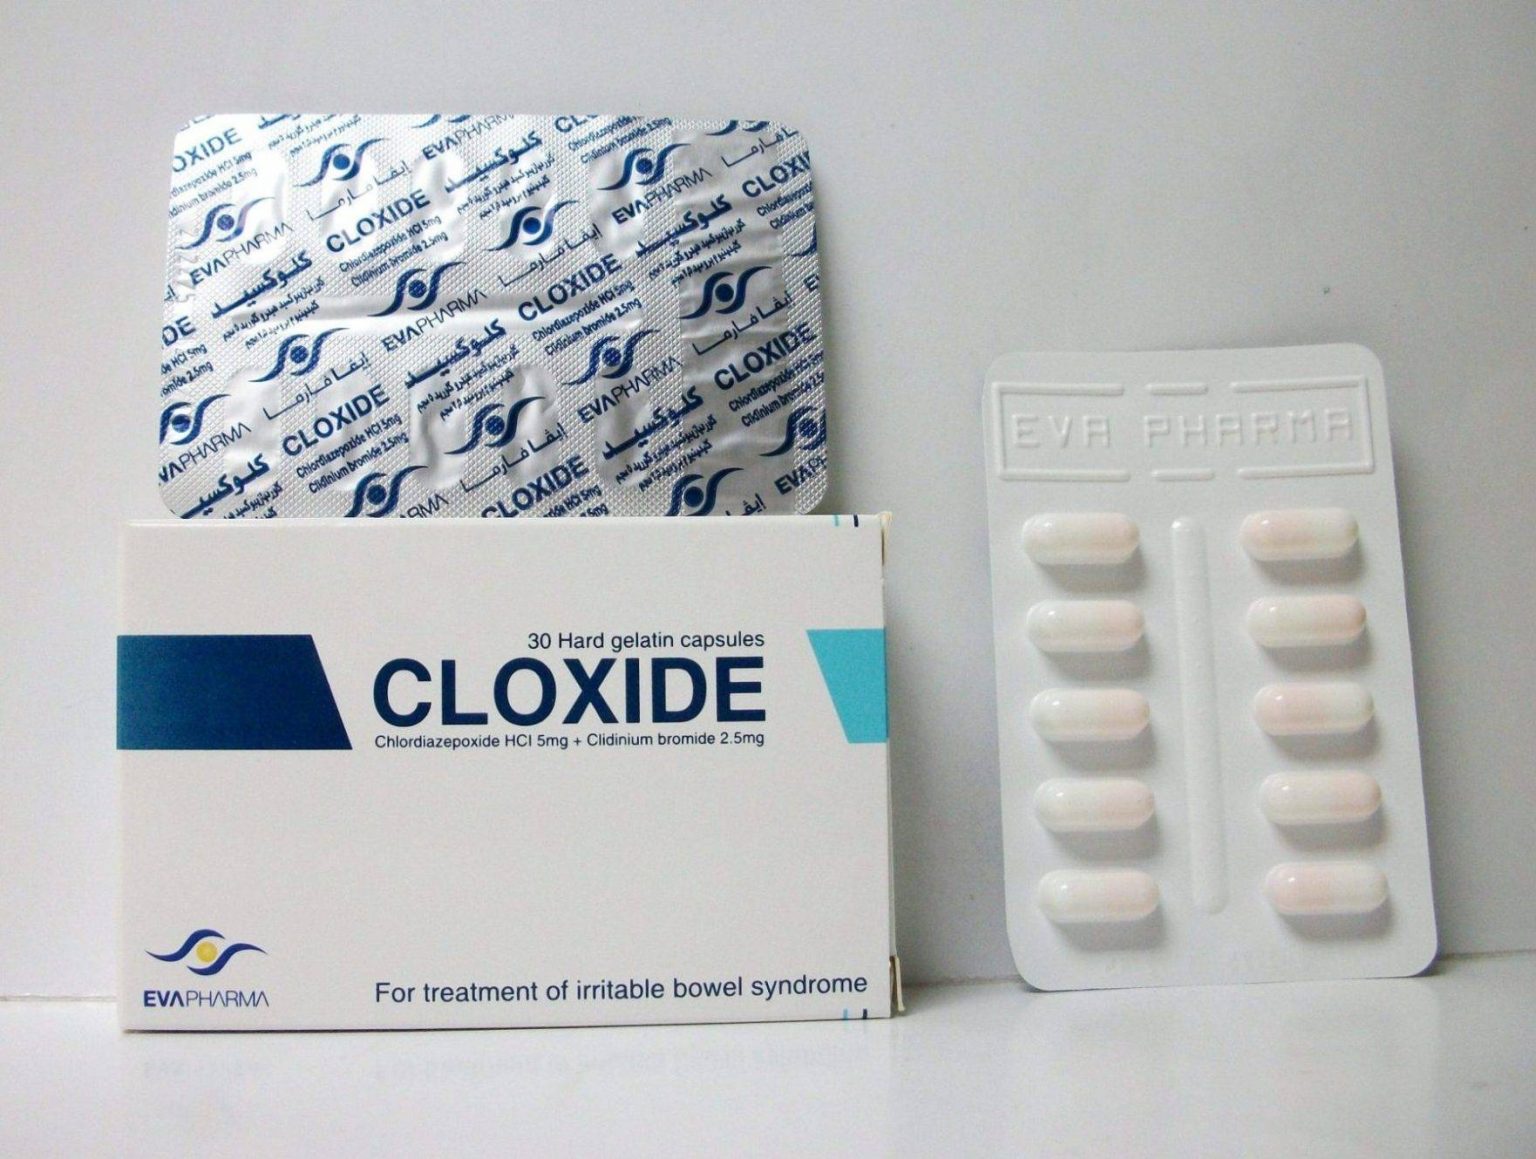 علاج قوى لالتهاب القولون مع كبسولات كلوكسيد cloxide الاشهر على الاطلاق